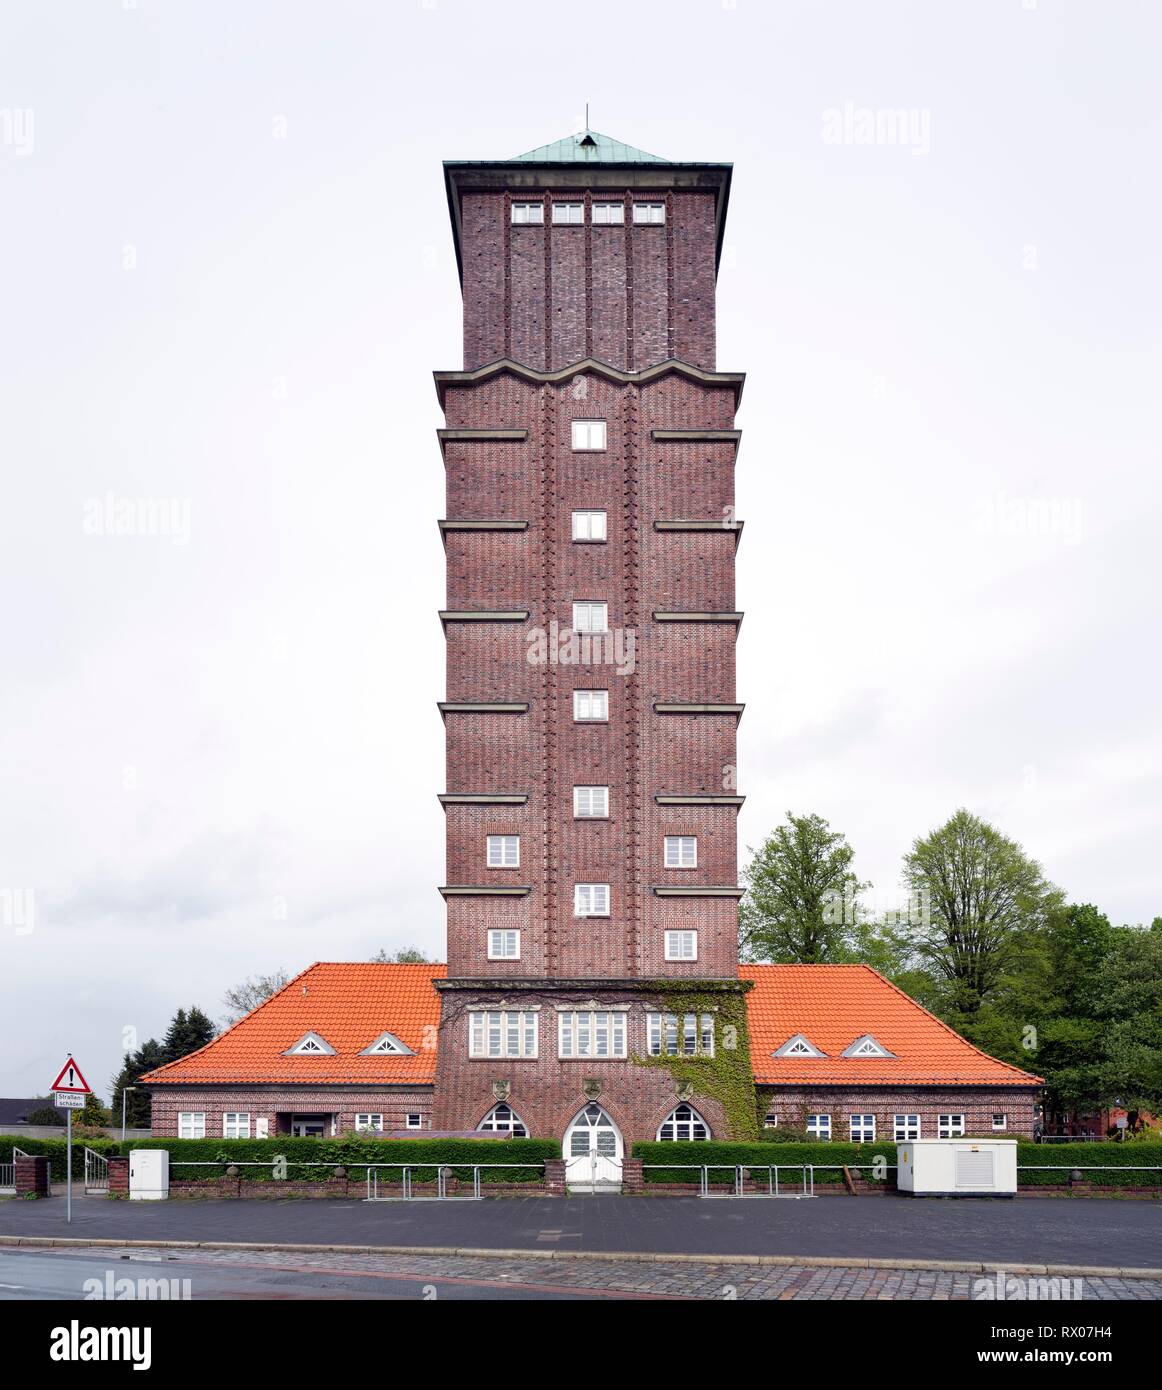 Water Tower, monumento architettonico, mattone espressionismo, Blumenthal, Brema, Germania Foto Stock